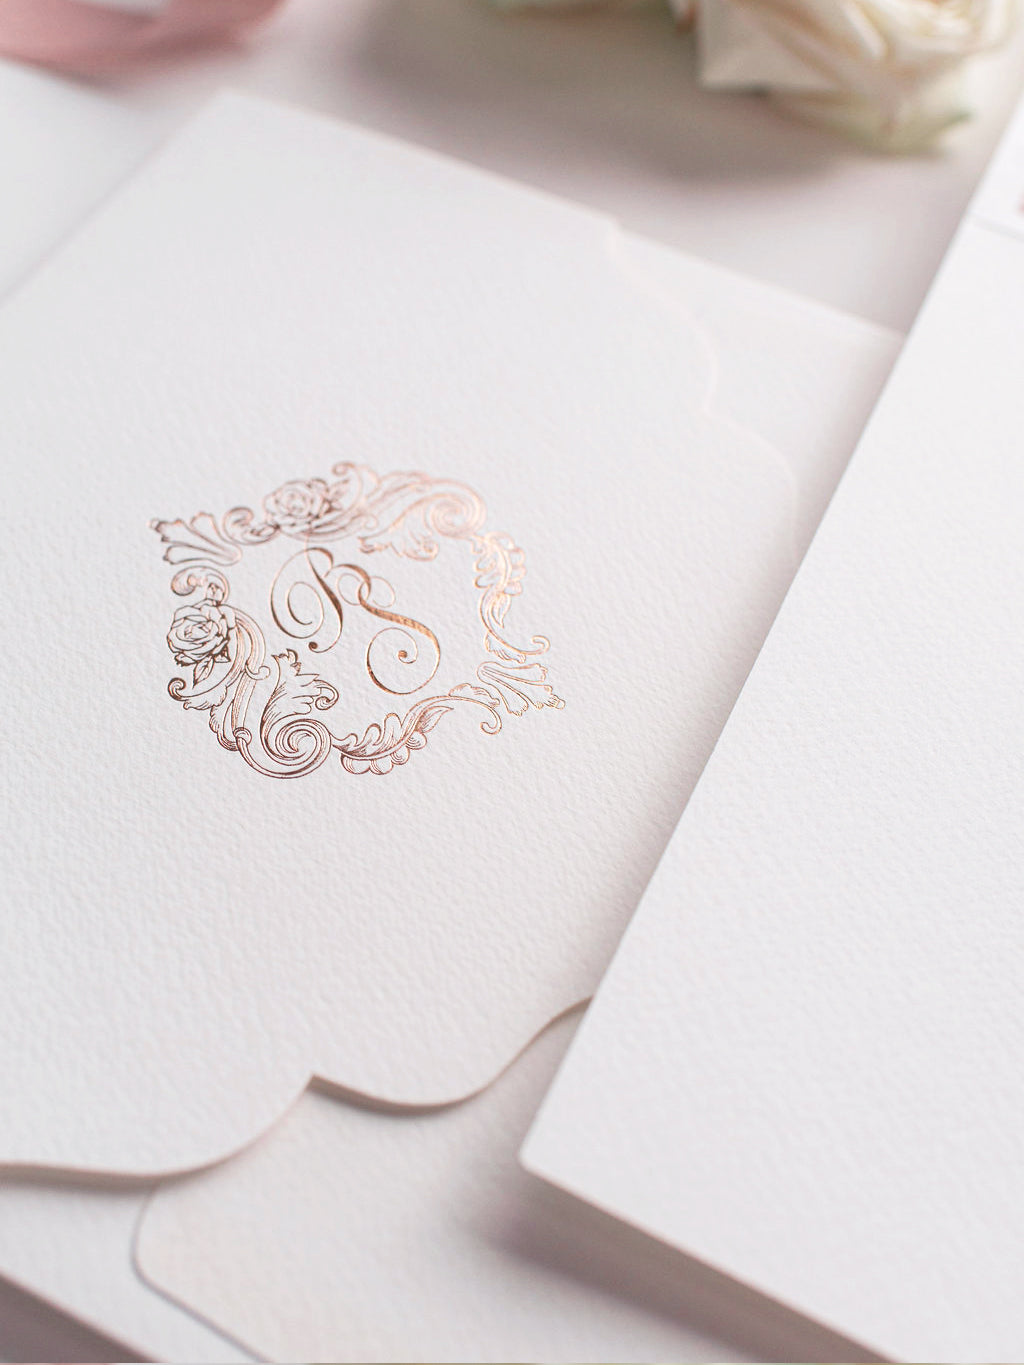 Invitation carrée royale avec une suite de poche monogramme en papier d'or rose et salle de poche du ventre